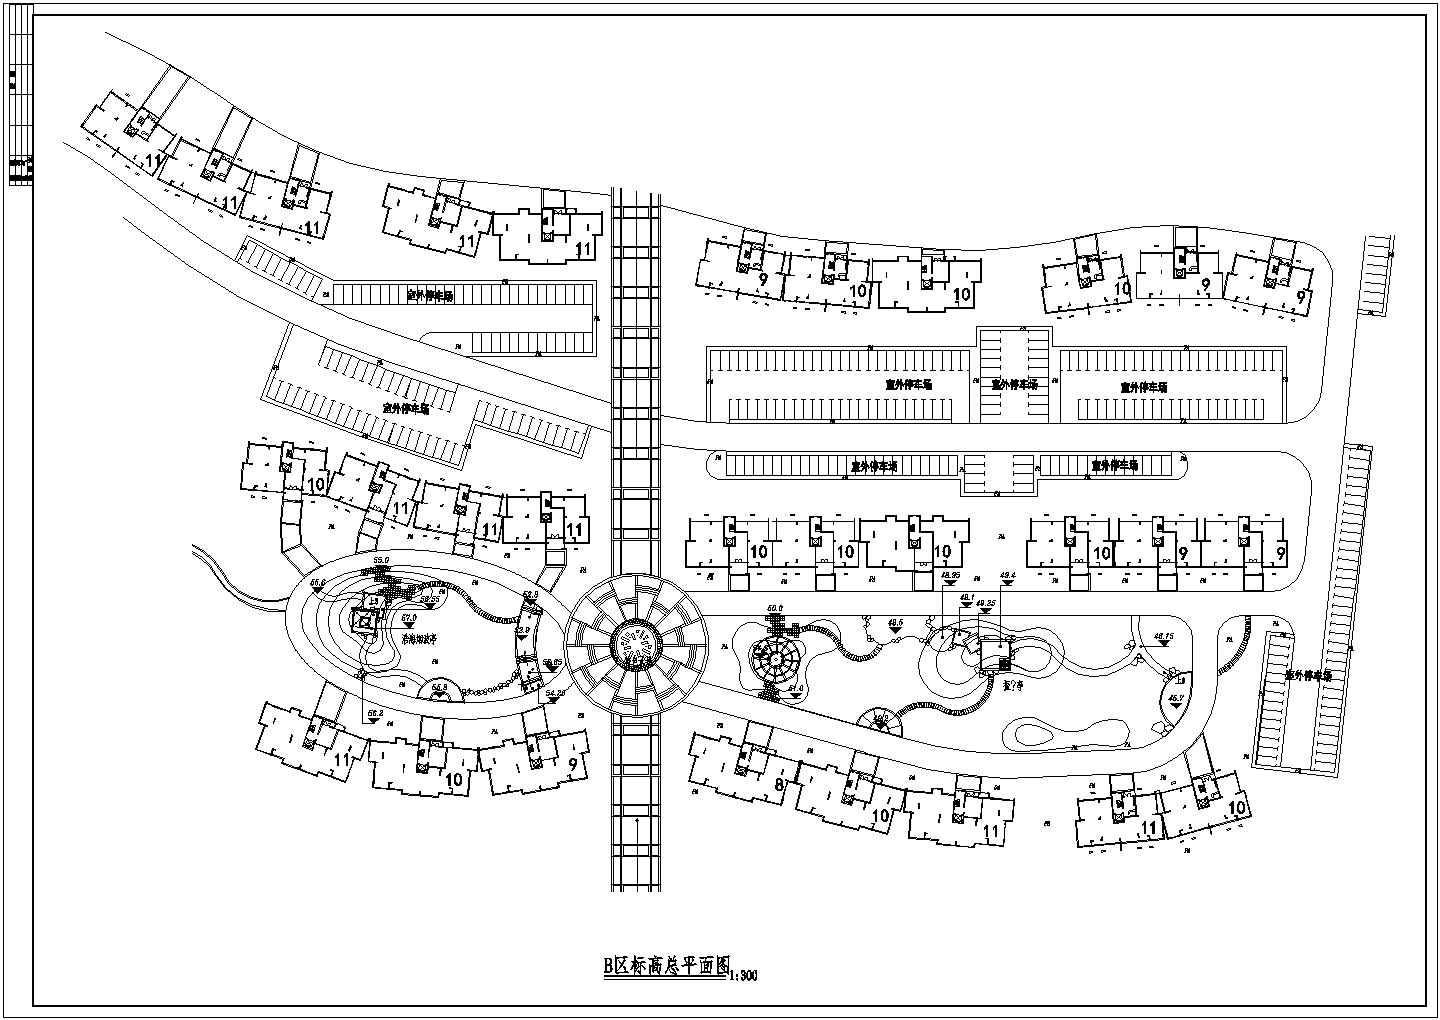 某大型主题公园全套图纸CAD详细完整建筑总图